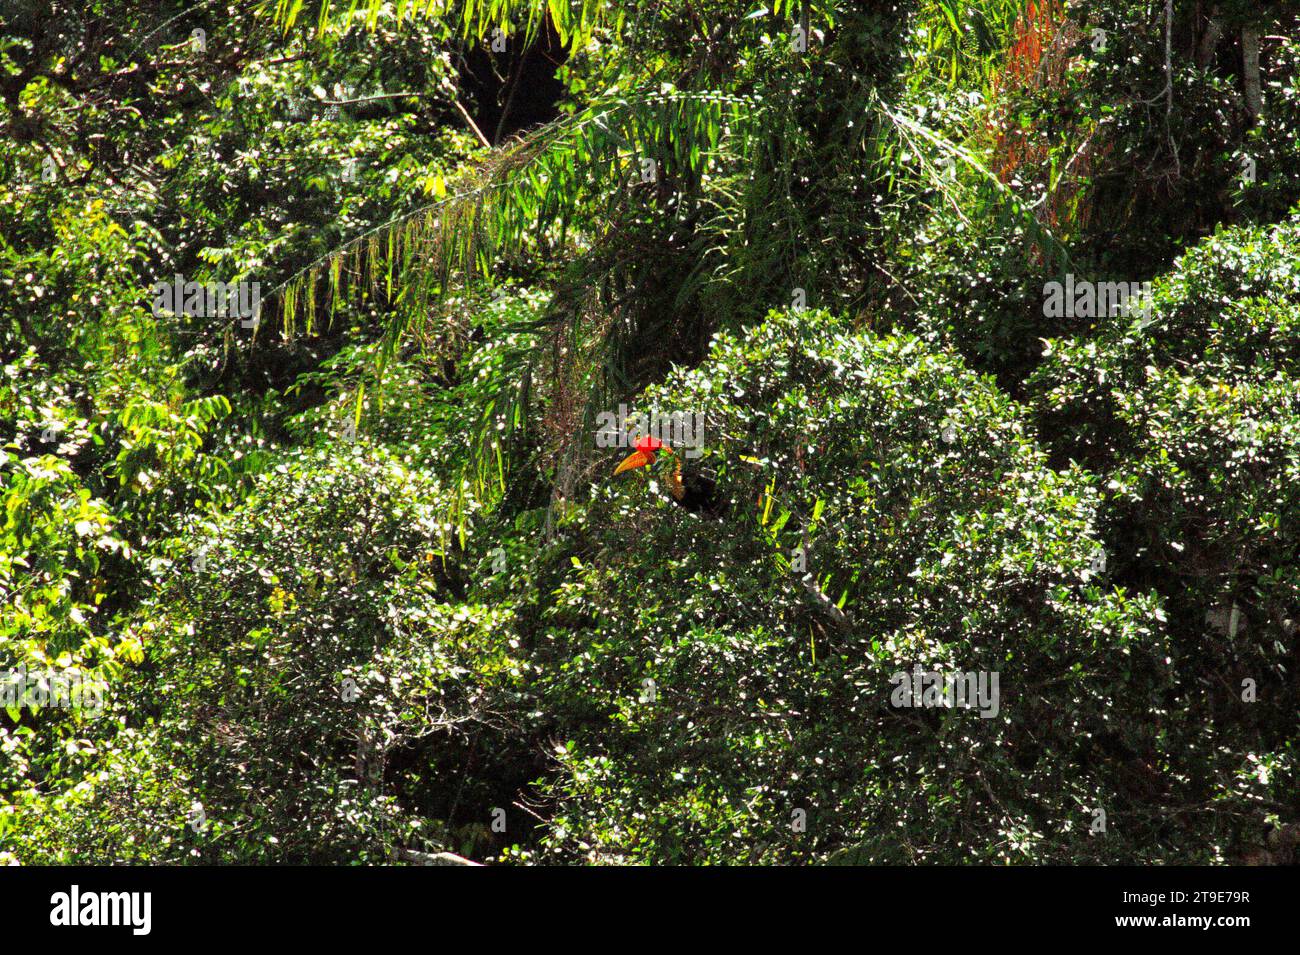 Der Kopf eines männlichen Nashornvogels (Rhyticeros cassidix) kann zwischen den Blättern auf einer Baumspitze beobachtet werden, da er in einem dichten Vegetationsgebiet am Fuße des Mount Tangkoko und Duasudara (Dua Saudara) in Bitung, Nord-Sulawesi, Indonesien, auf der Suche ist. Nashornvogel, der aufgrund des hohen Wertes ihres Fleisches, ihrer Kaskaden und ihrer Schwanzfedern für die Jagd anfällig ist spielt eine wichtige Rolle bei der Waldregeneration und bei der Erhaltung der Dichte großer Bäume durch seine Fähigkeit als Saatgutverteilungsmittel, während gleichzeitig ein gesunder Regenwald durch seine kohlenstoffabsorbierende Rolle bei der Bekämpfung der globalen Erwärmung wichtig ist. Stockfoto